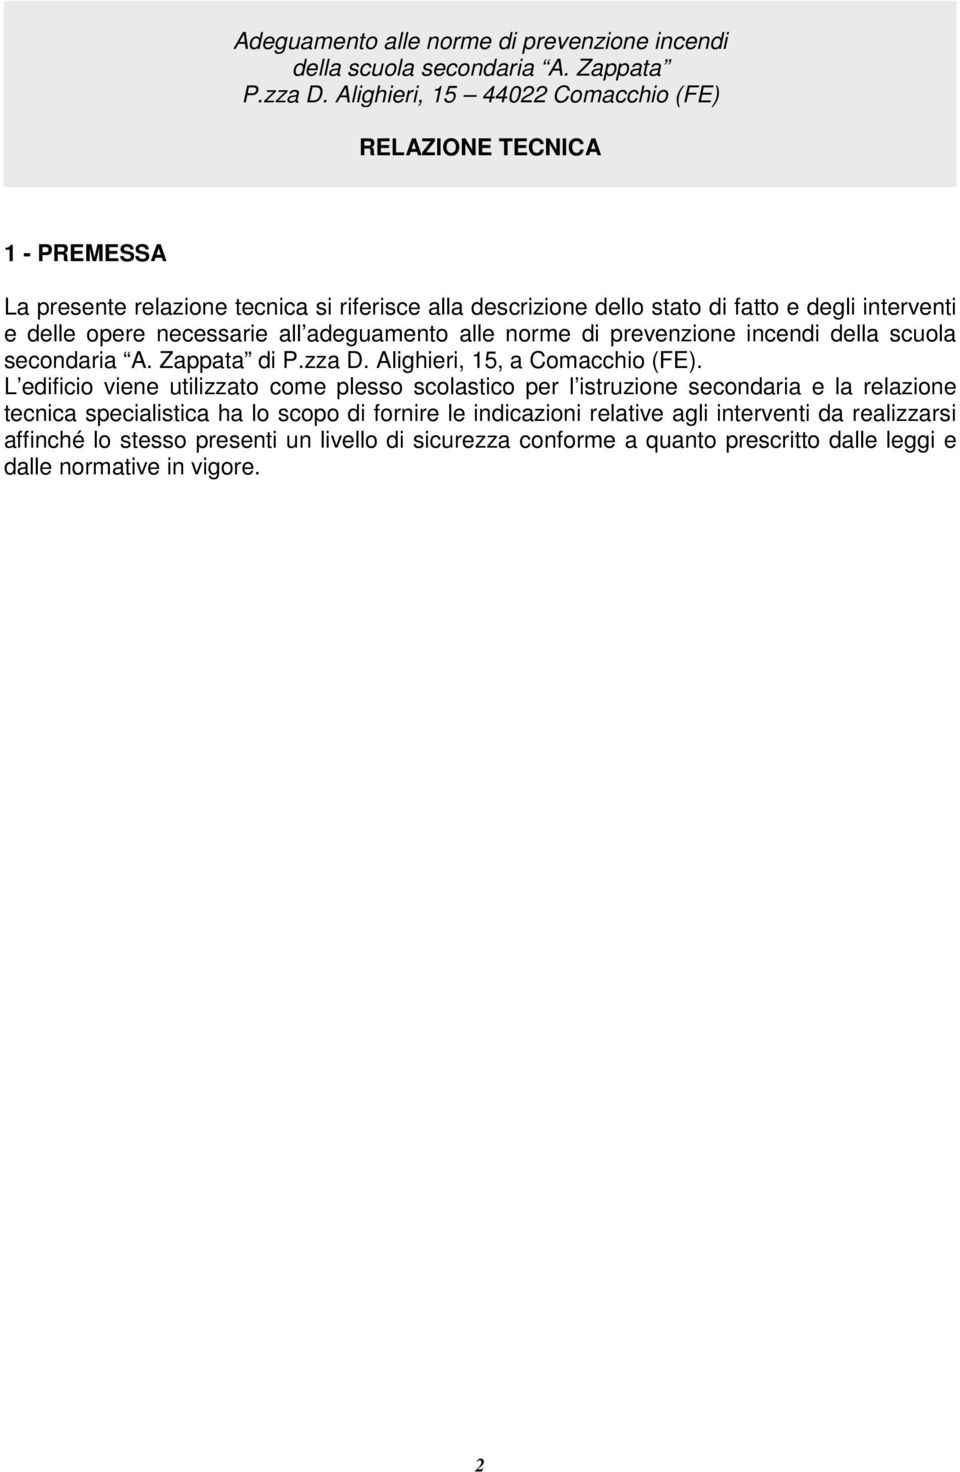 necessarie all adeguament alle nrme di prevenzine incendi della scula secndaria A. Zappata di P.zza D. Alighieri, 15, a Cmacchi (FE).